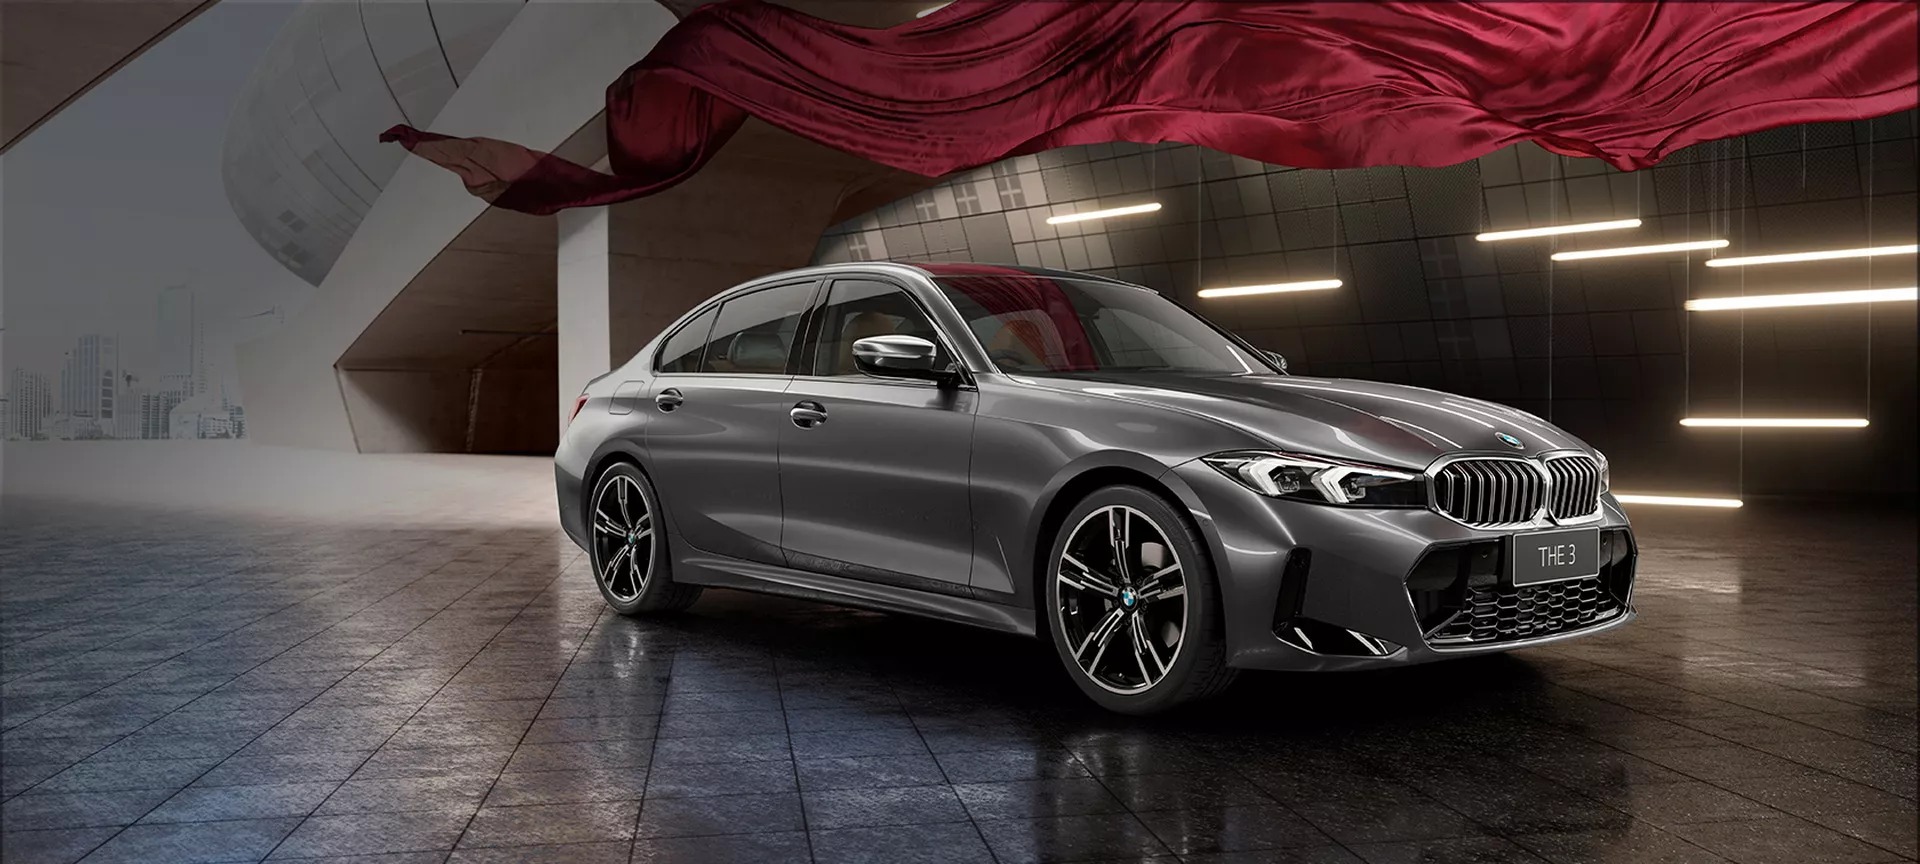 Ra mắt BMW 3-Series kéo dài: Nhìn mắt thường khó tìm ra sự khác biệt - Ảnh 2.